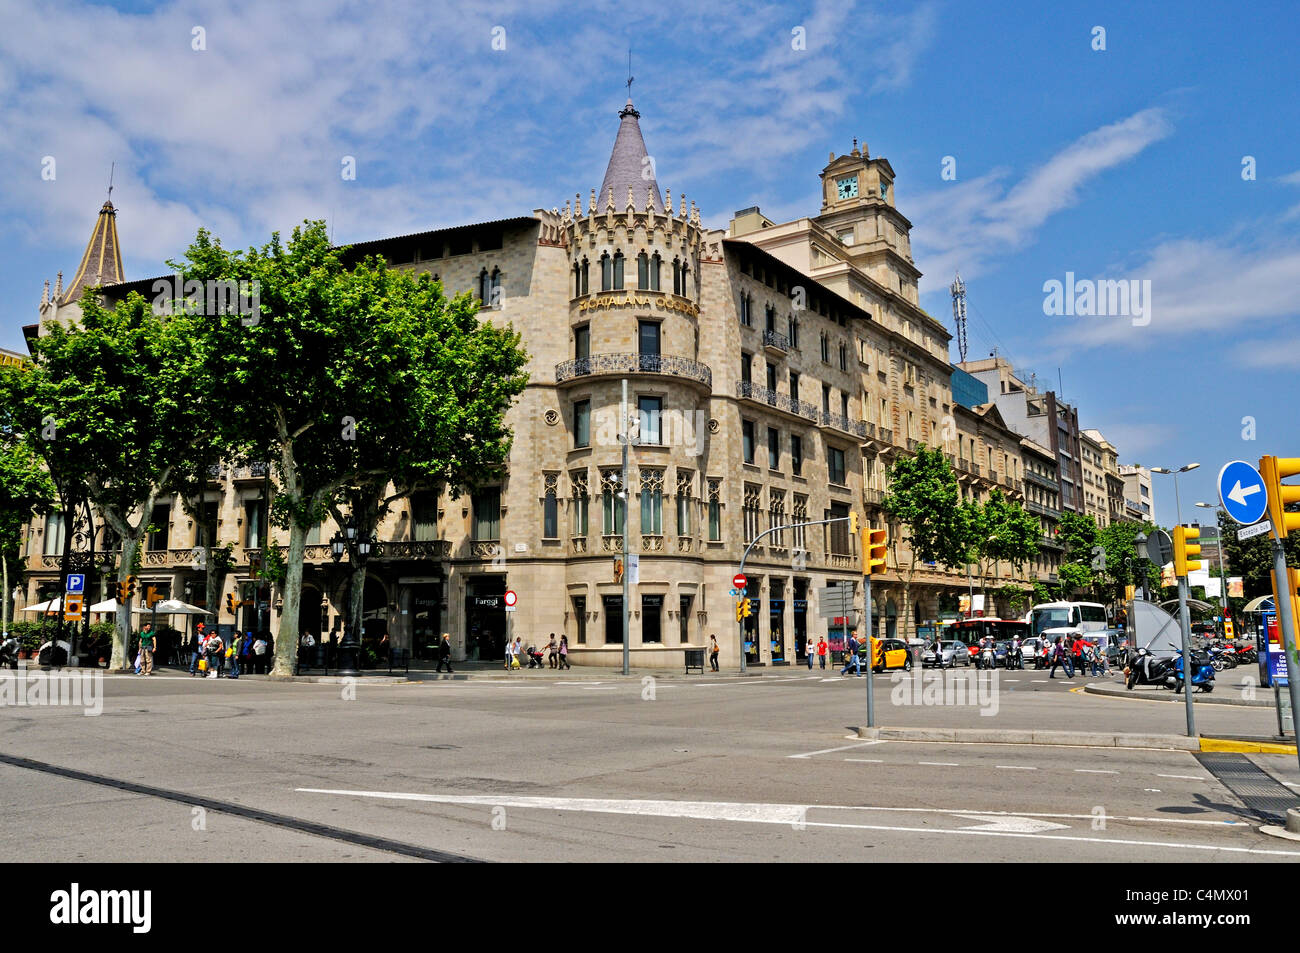 La façade élégante et tours de la Casa Pascual i Pons par l'architecte Enric Sagnier Villavecchia, Eixample, Barcelone Banque D'Images